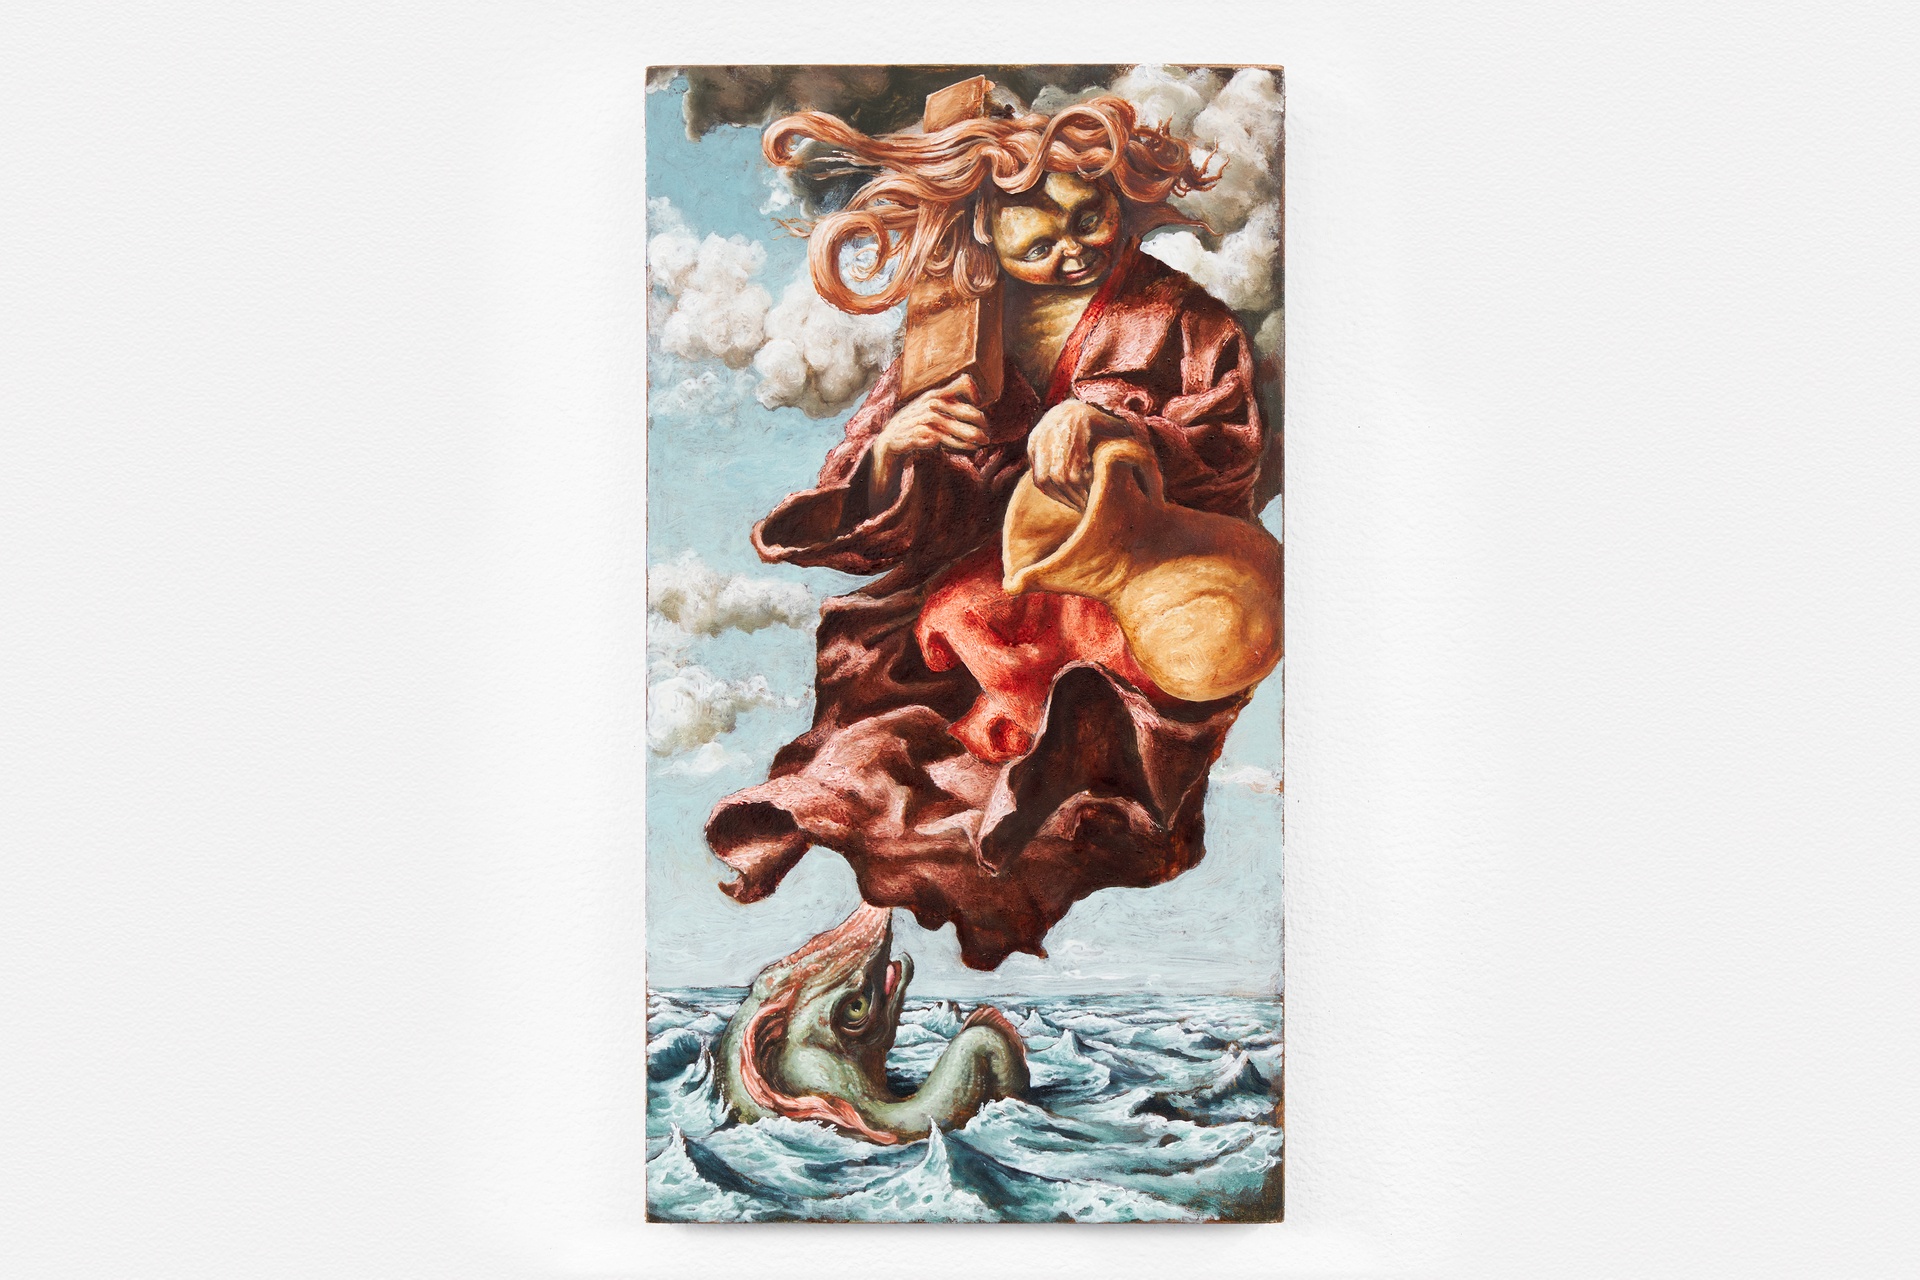 Angelus, 2021oil on wood panel27 x 15 cm